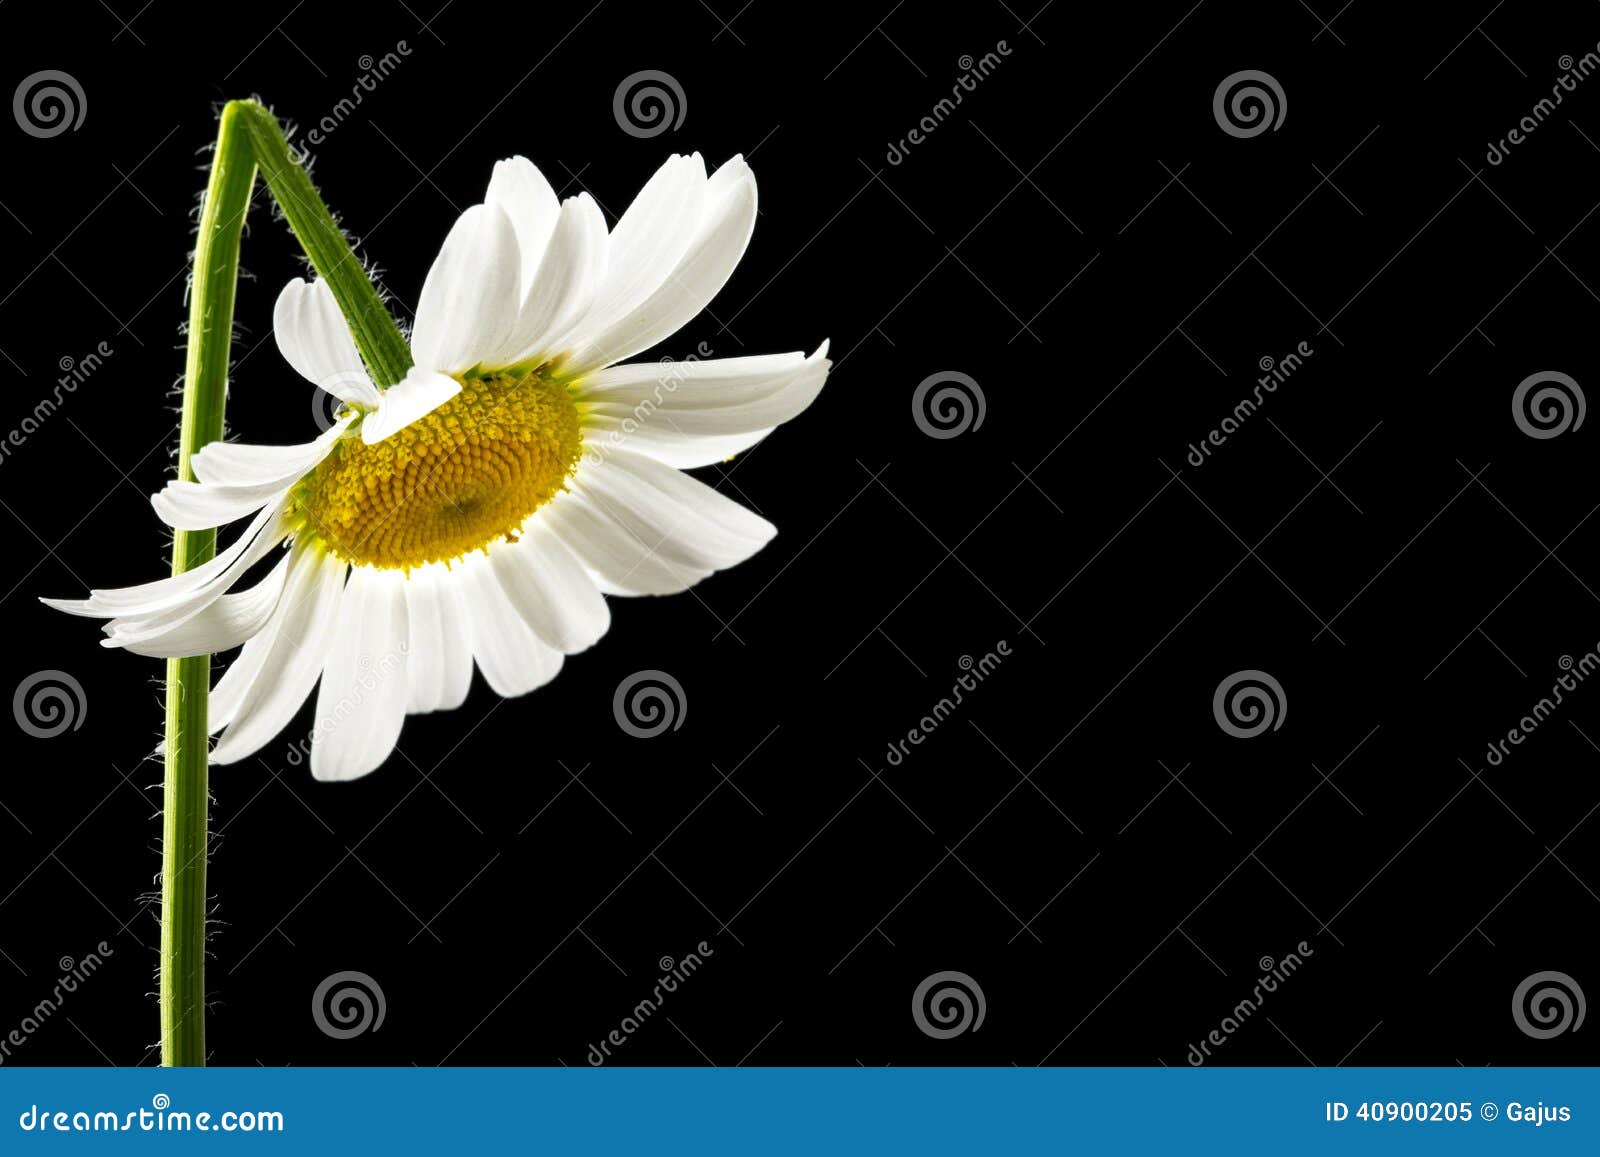 beautiful fresh white summer daisy